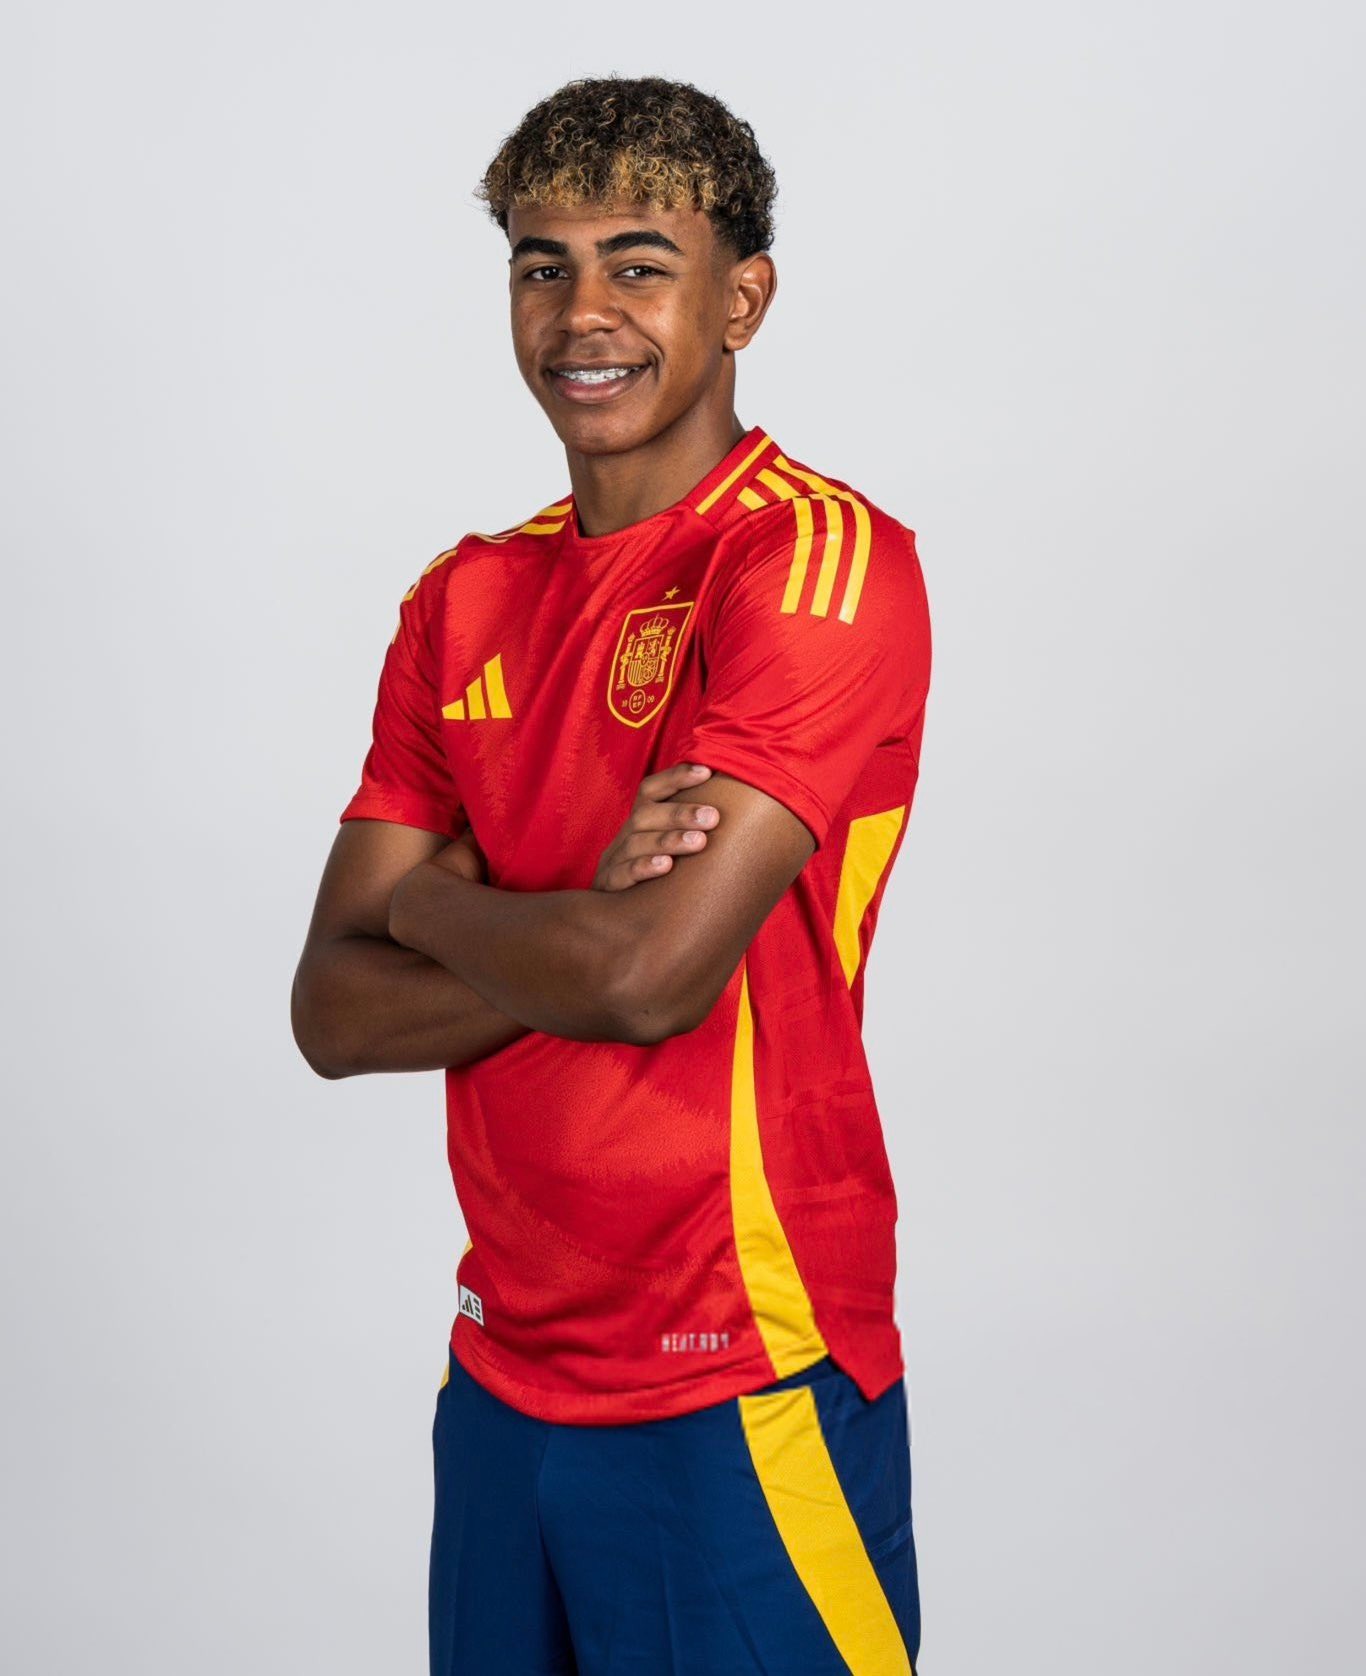 لامين يامال لاعب منتخب إسبانيا في جلسة تصويرية قبل انطلاق بطولة أوروبا يورو 2024- 12 يونيو 2024